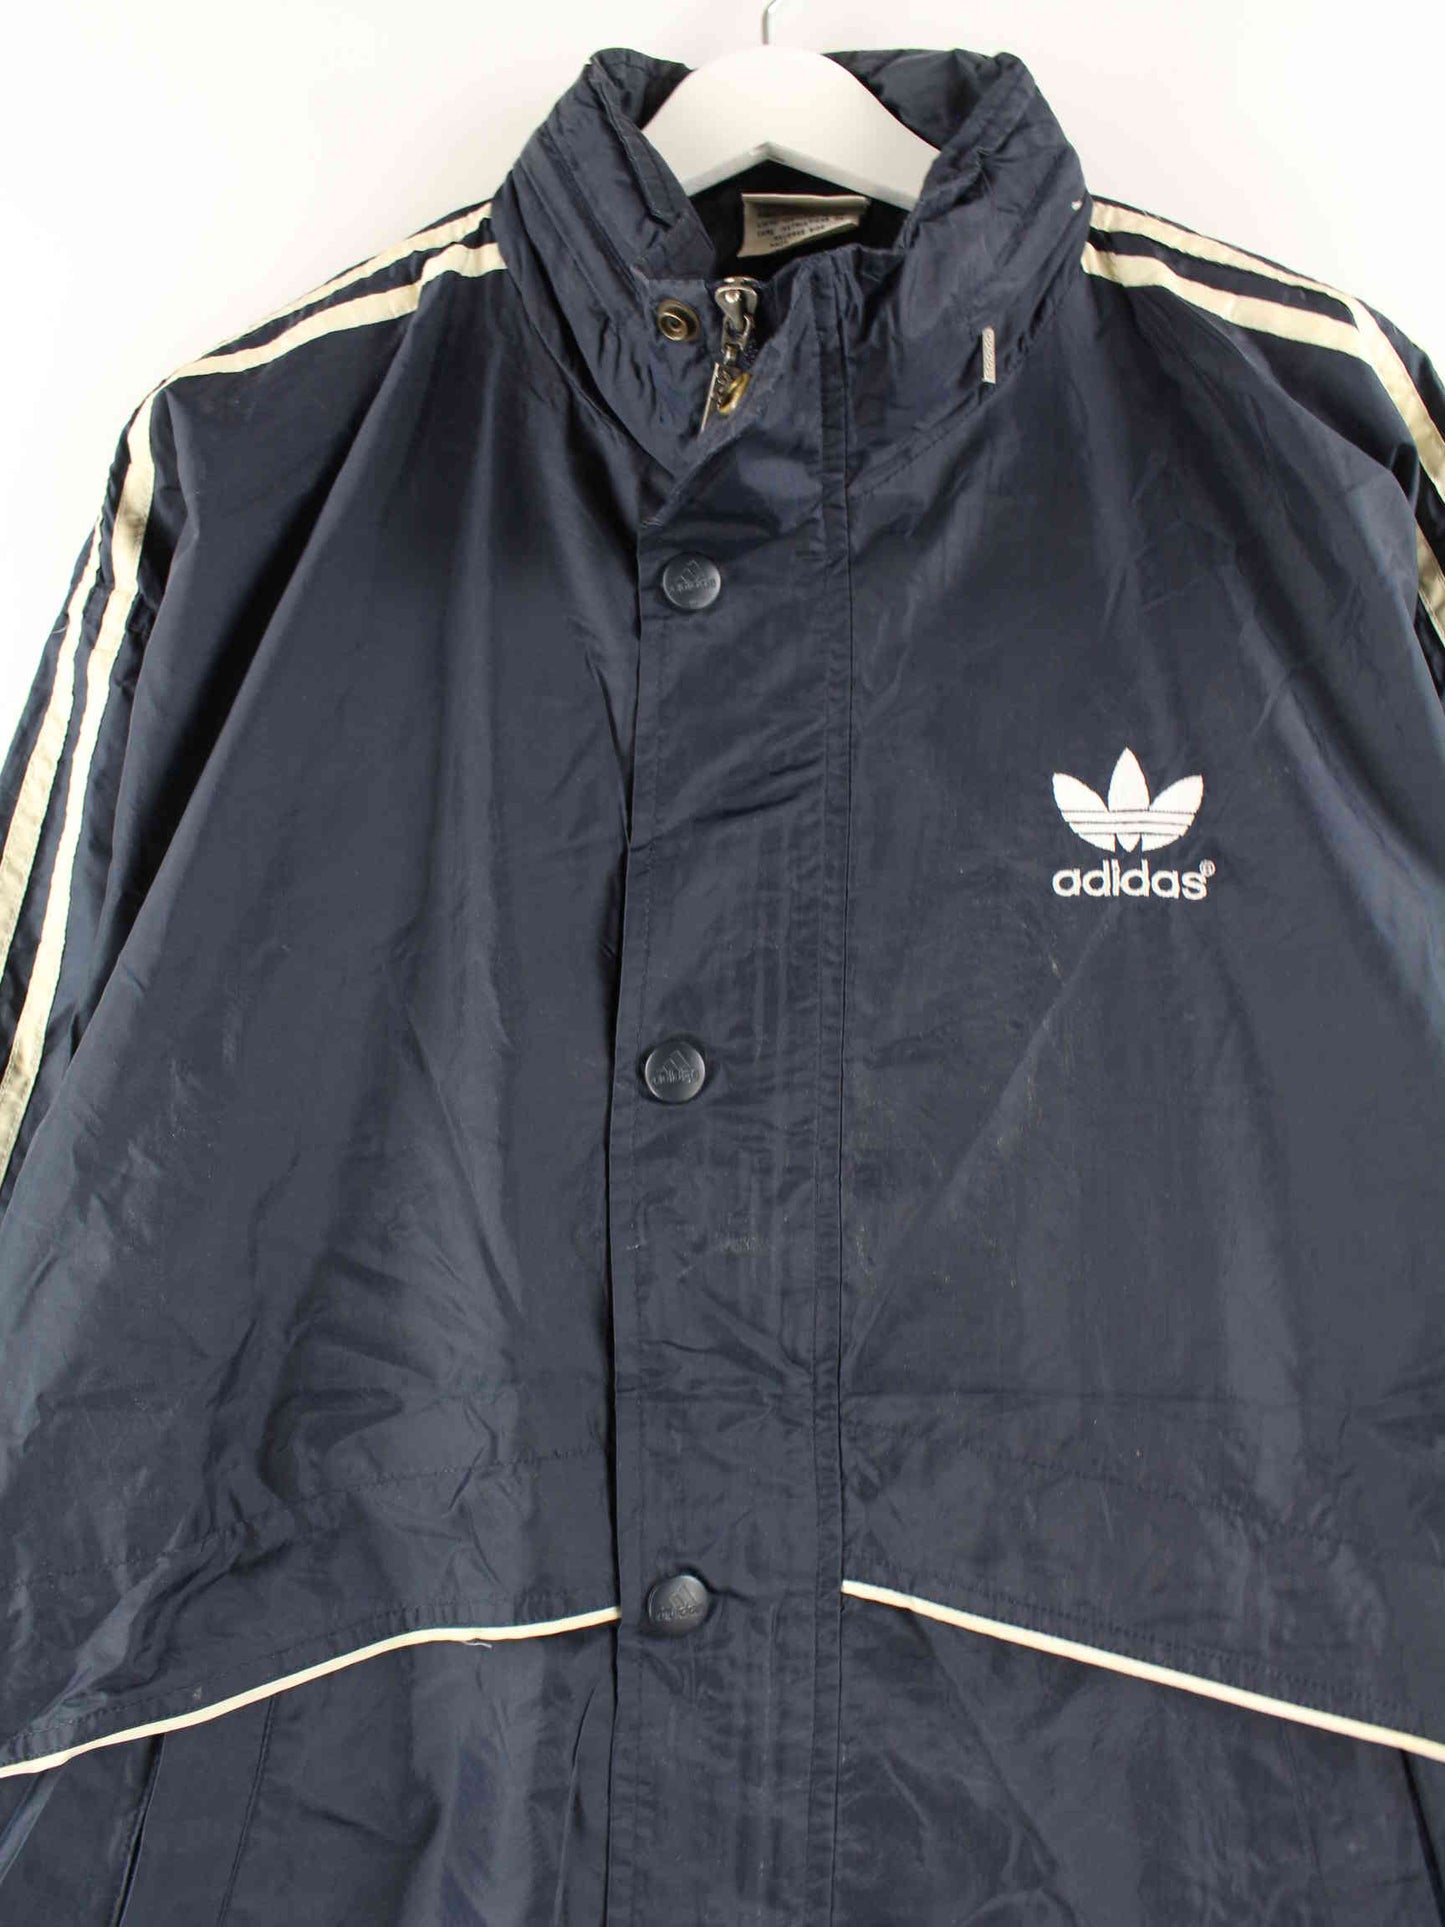 Adidas 90s Vintage Jacke Blau M